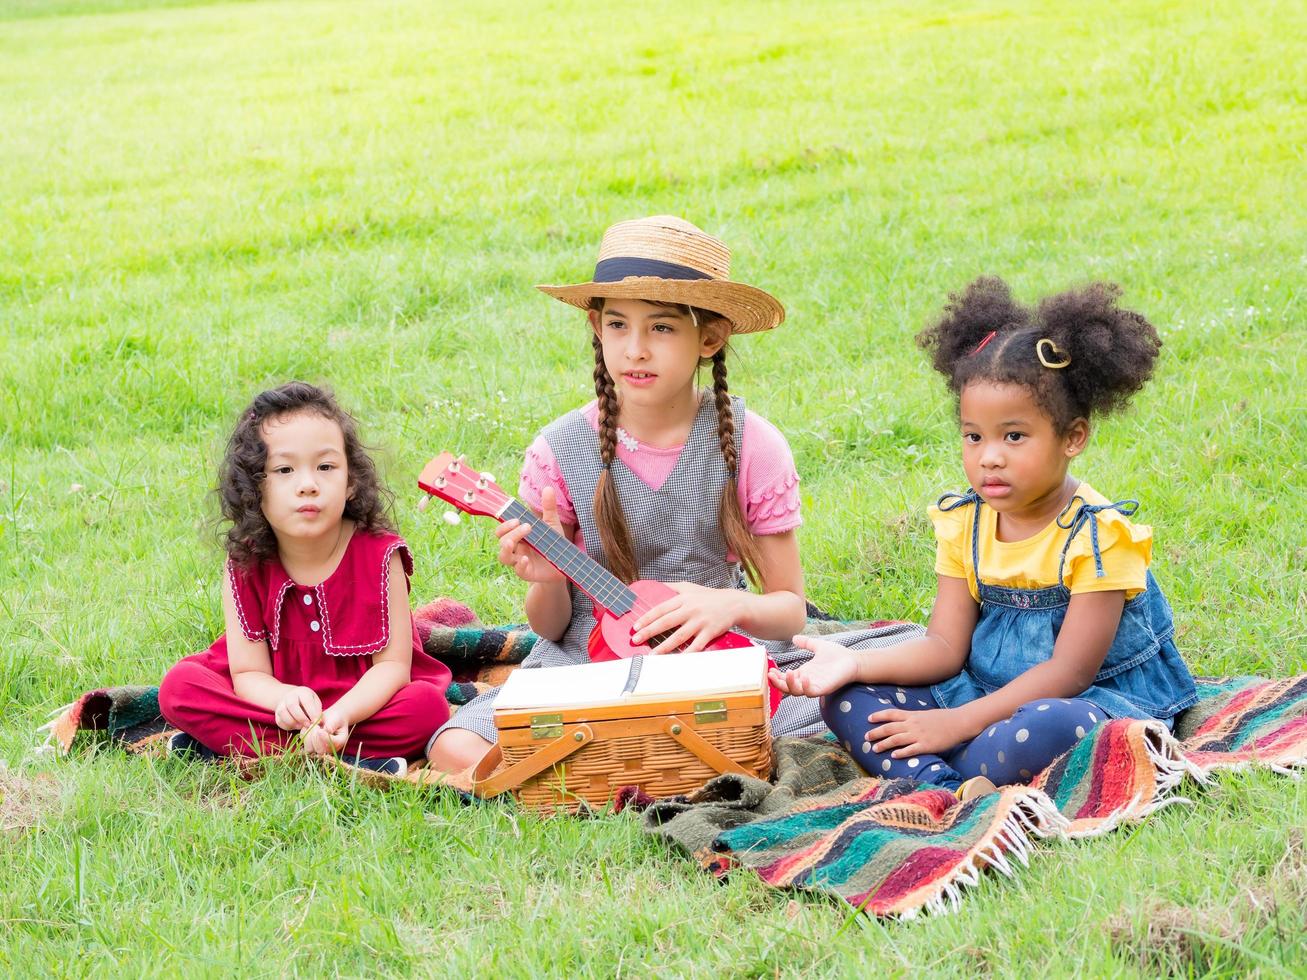 la niña se sienta en el césped y aprende a tocar el ukelele, aprendiendo fuera de la escuela en el parque natural foto